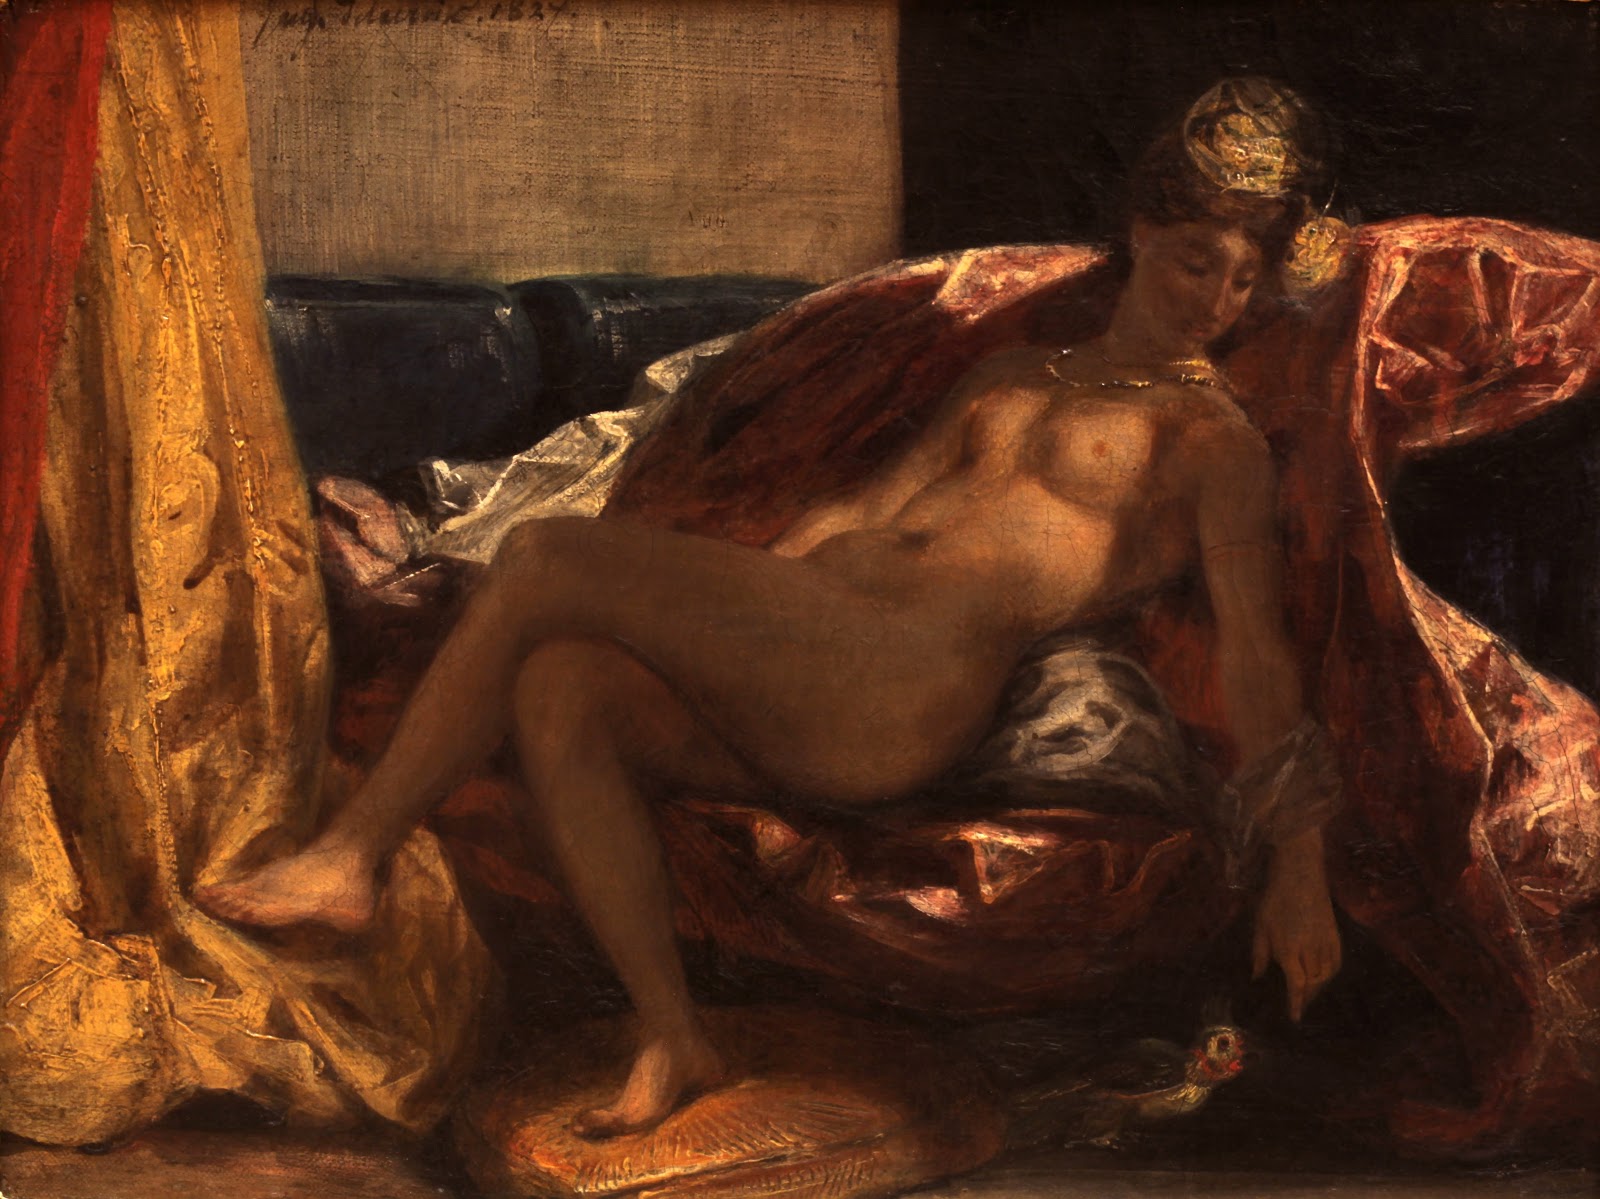 Eugene+Delacroix-1798-1863 (290).jpg